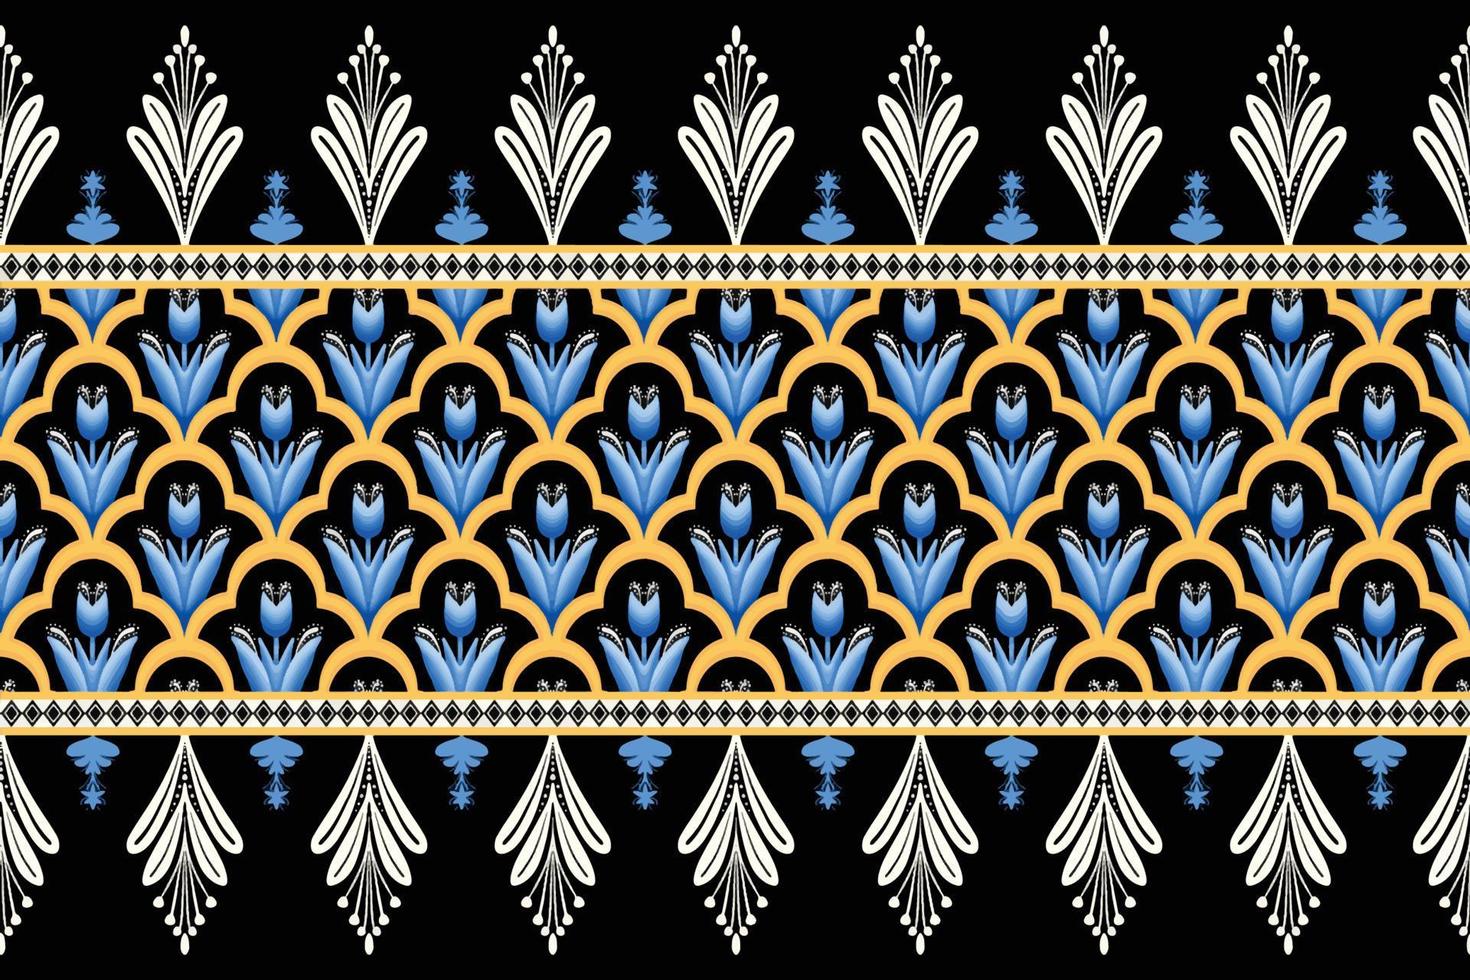 flor azul em design tradicional de padrão oriental geométrico étnico preto, branco, amarelo para plano de fundo, tapete, papel de parede, roupas, embrulho, batik, tecido, estilo de bordado de ilustração vetorial vetor